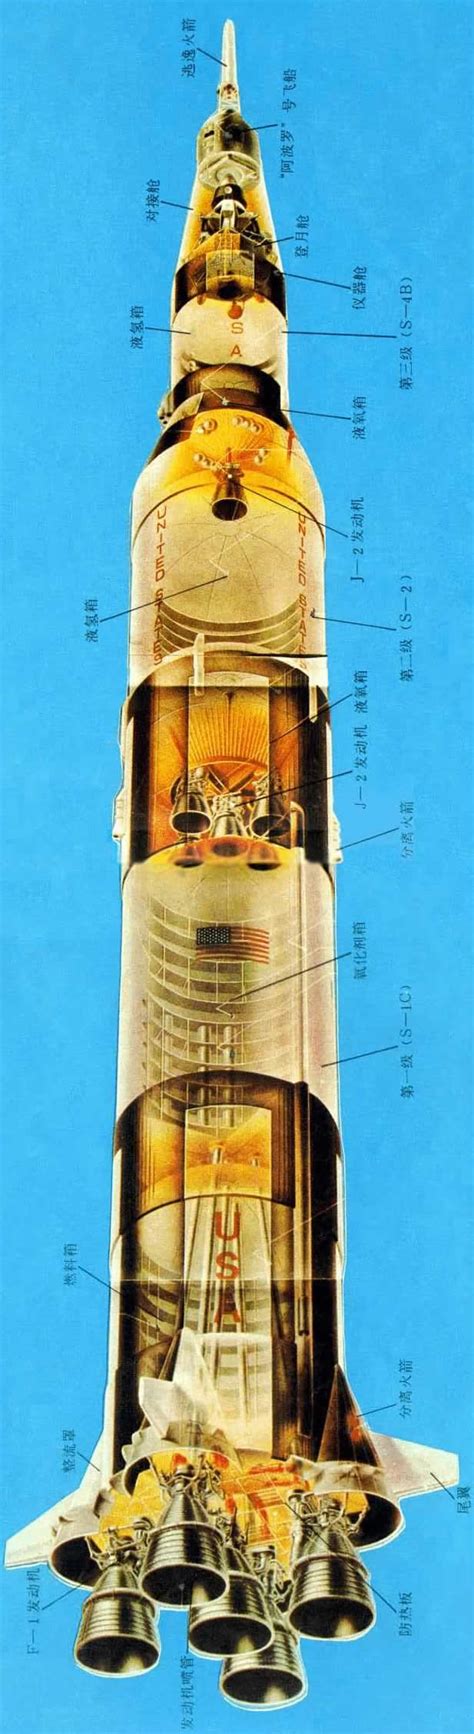 1969年7月3日前苏联发射N1火箭失败